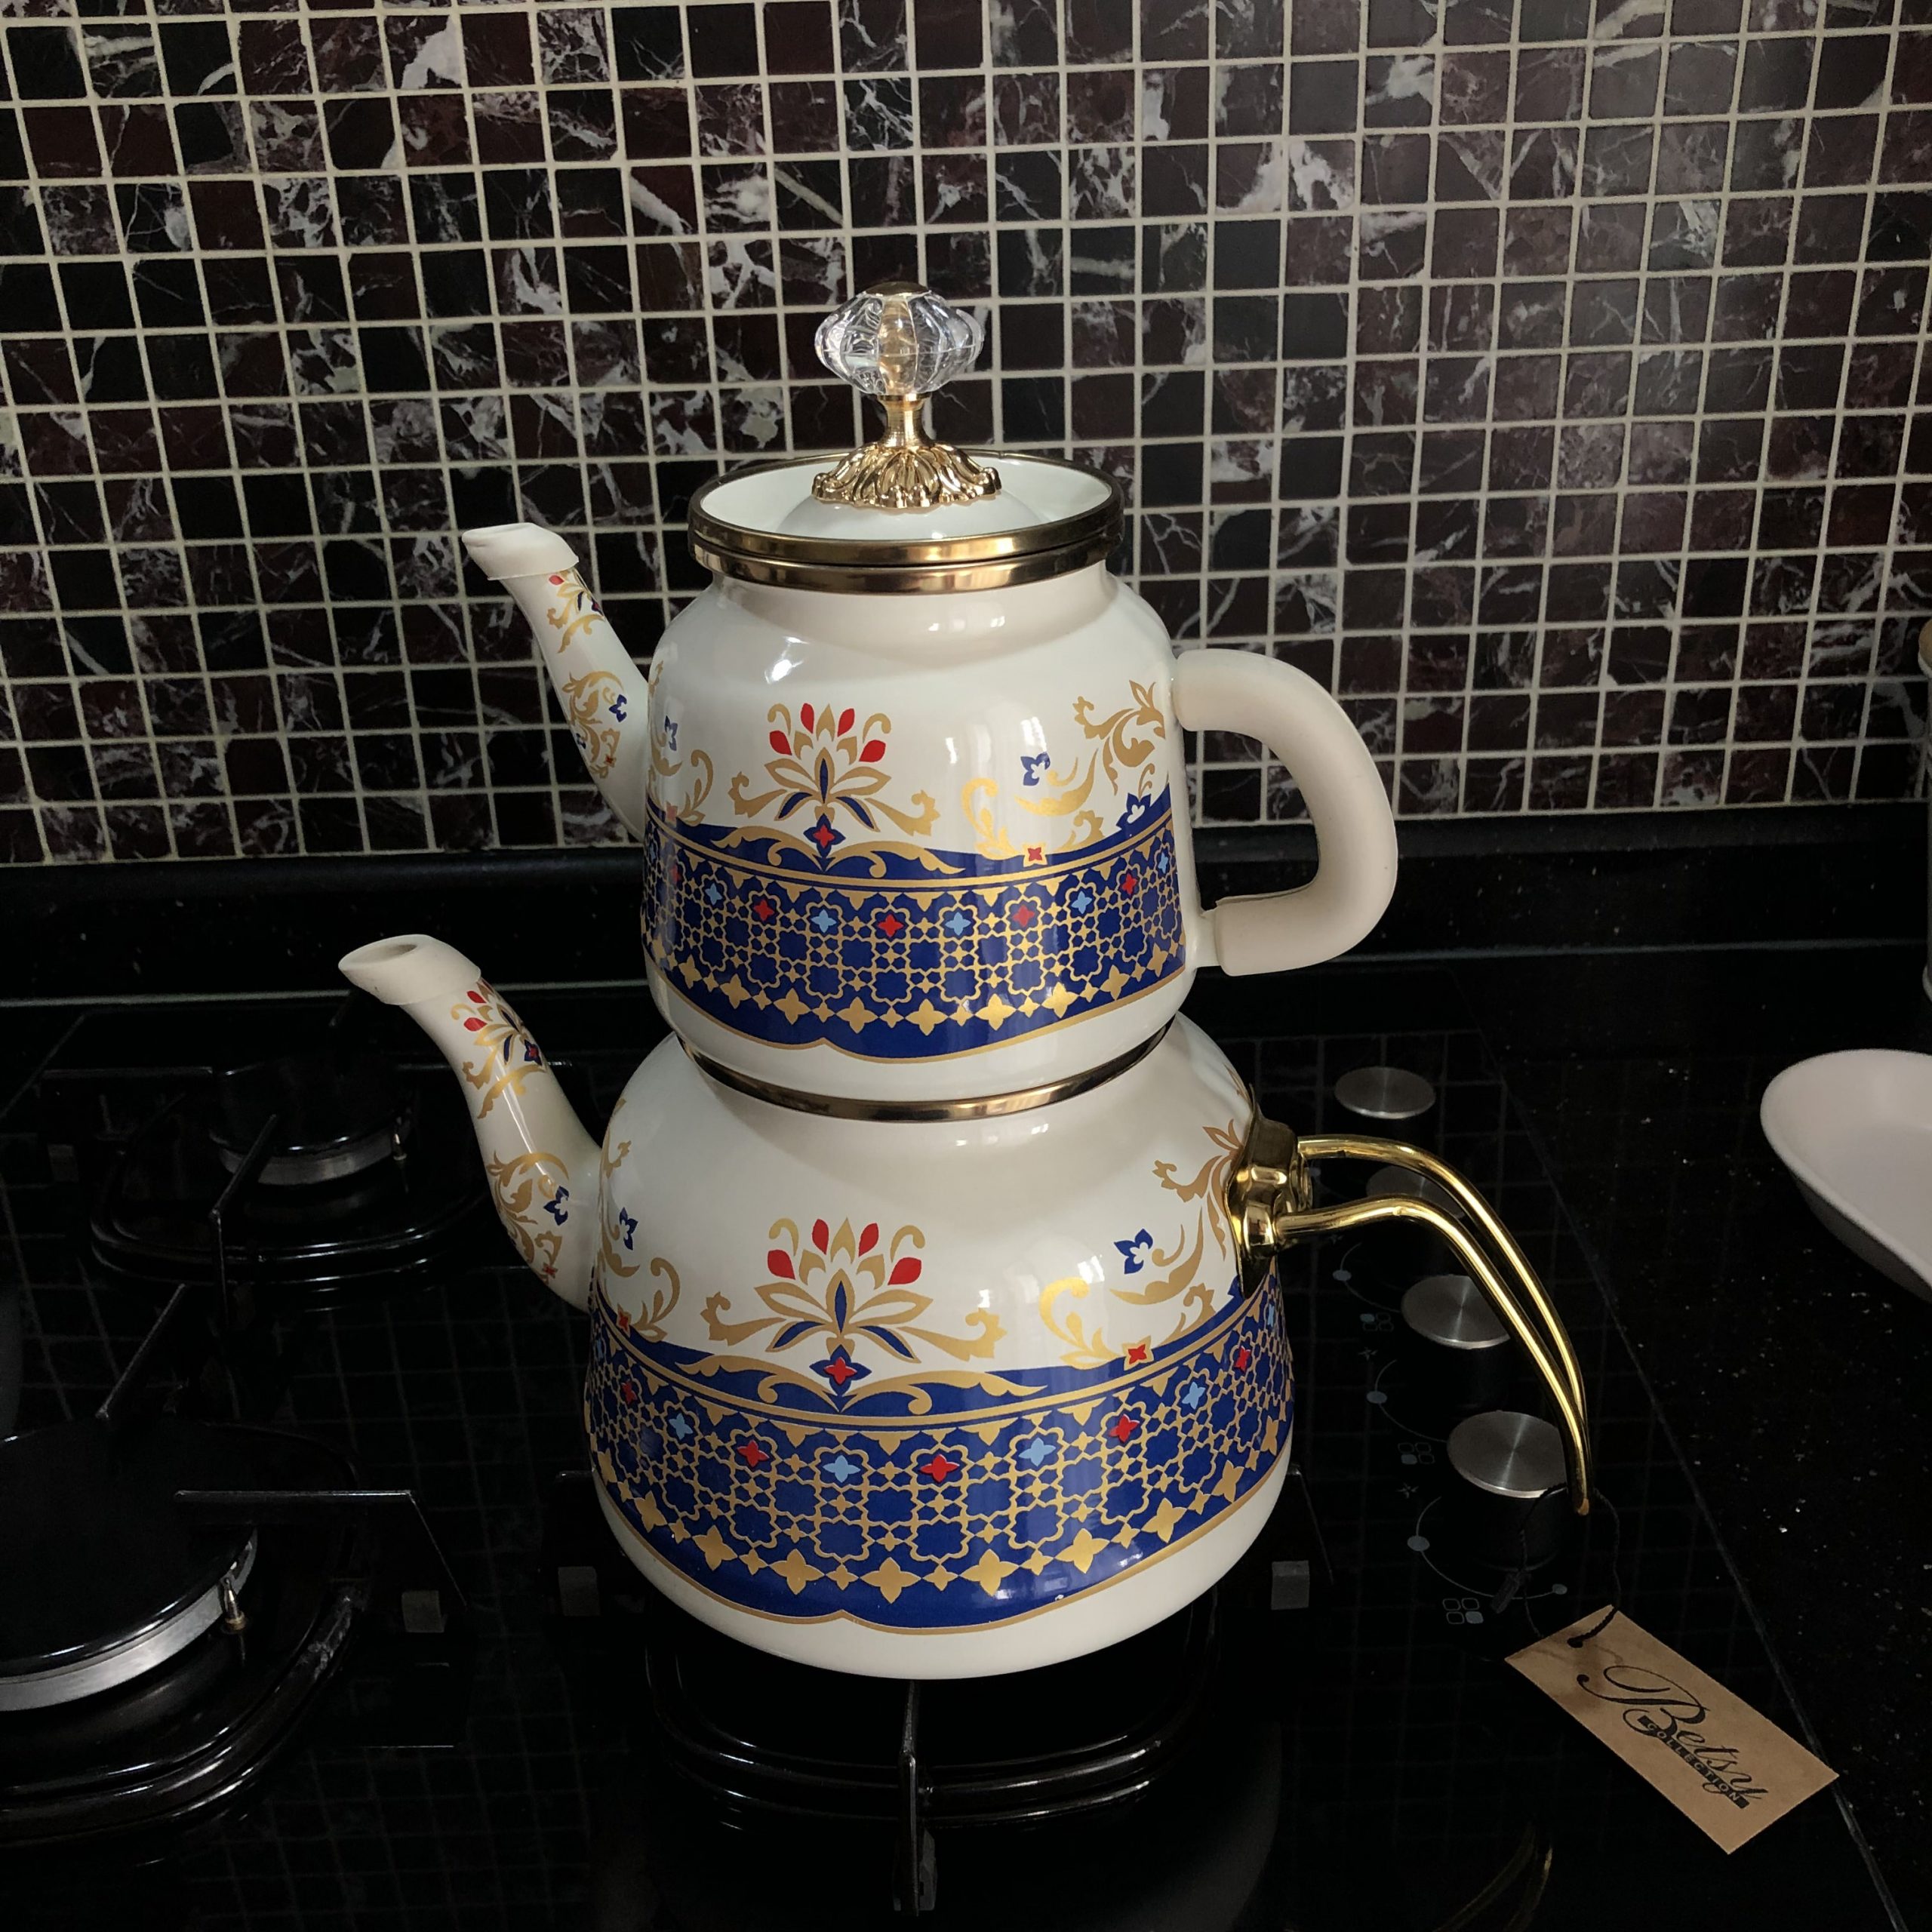 https://traditionalturk.com/wp-content/uploads/2021/08/vintage-pattern-enamel-turkish-tea-pot-kettle-3-scaled.jpeg